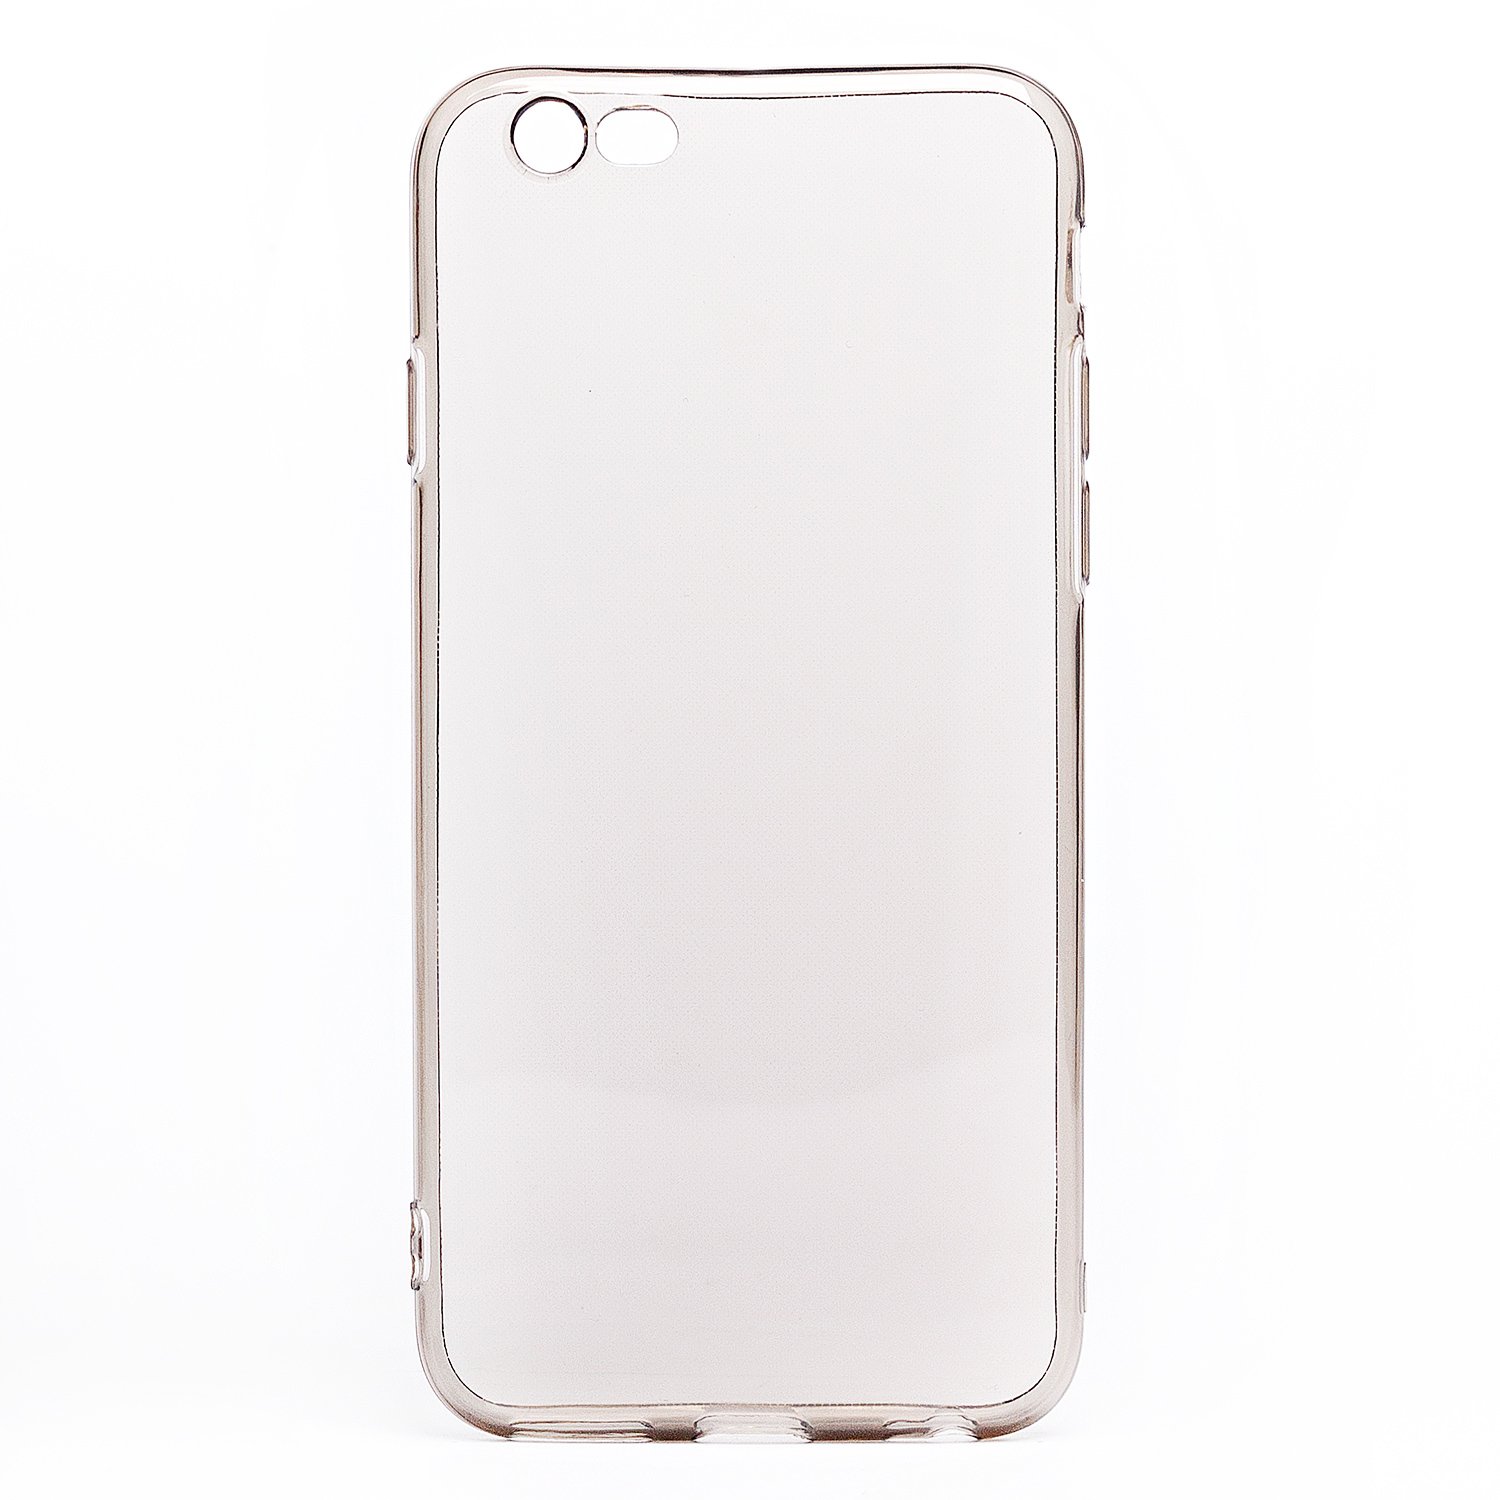 Чехол-накладка Ultra Slim для смартфона Apple iPhone 6/6S, силикон, черный/прозрачный (120054)